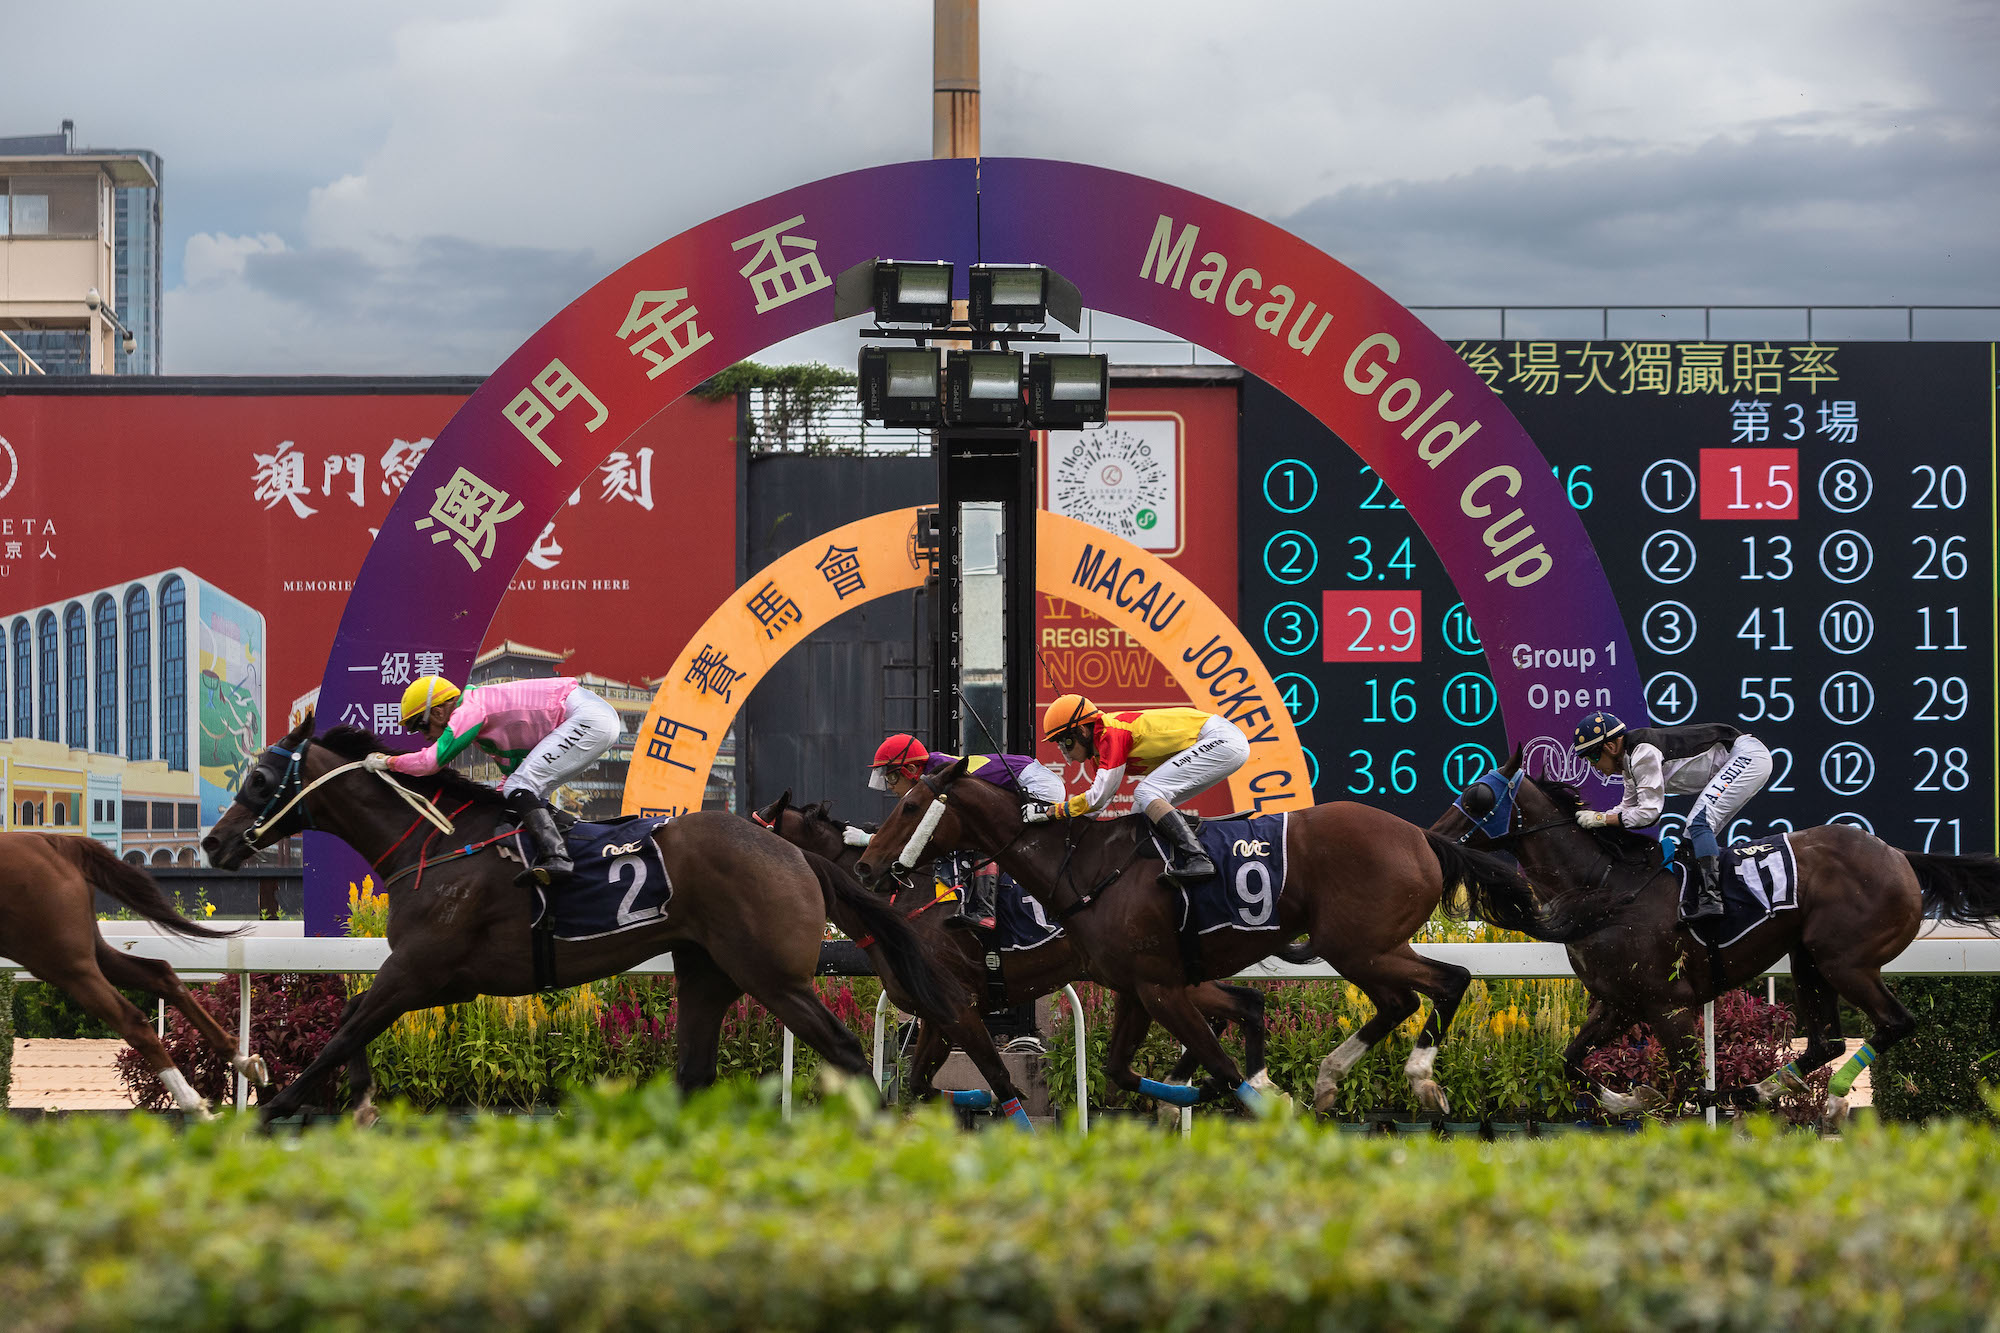 Horse racing at the Macau Jockey Club